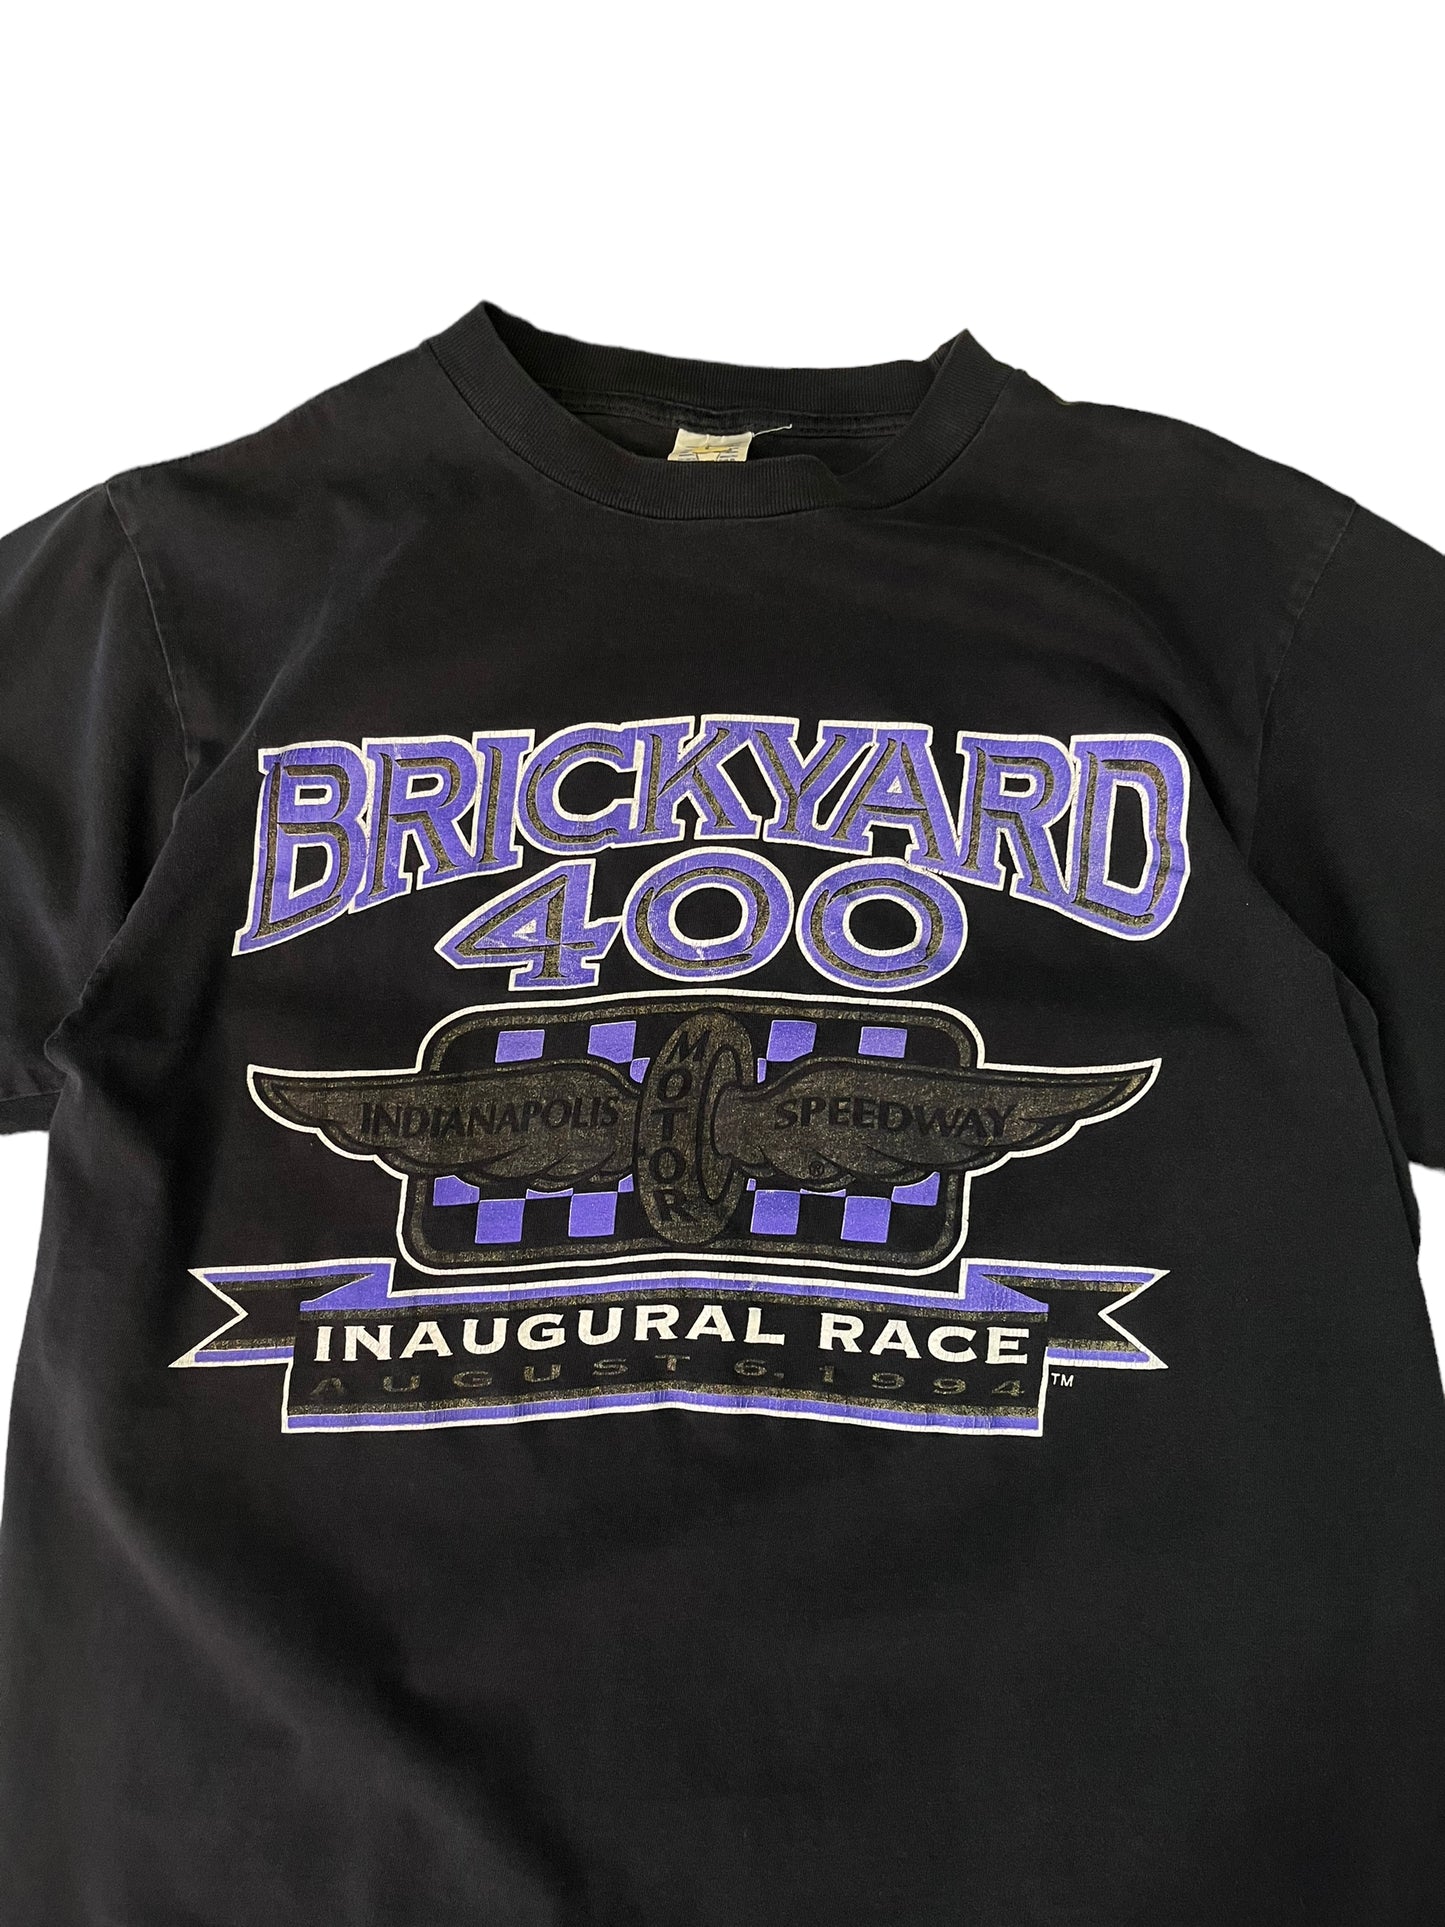 (M) 1994 Brickyard 400 Nascar Race Tee